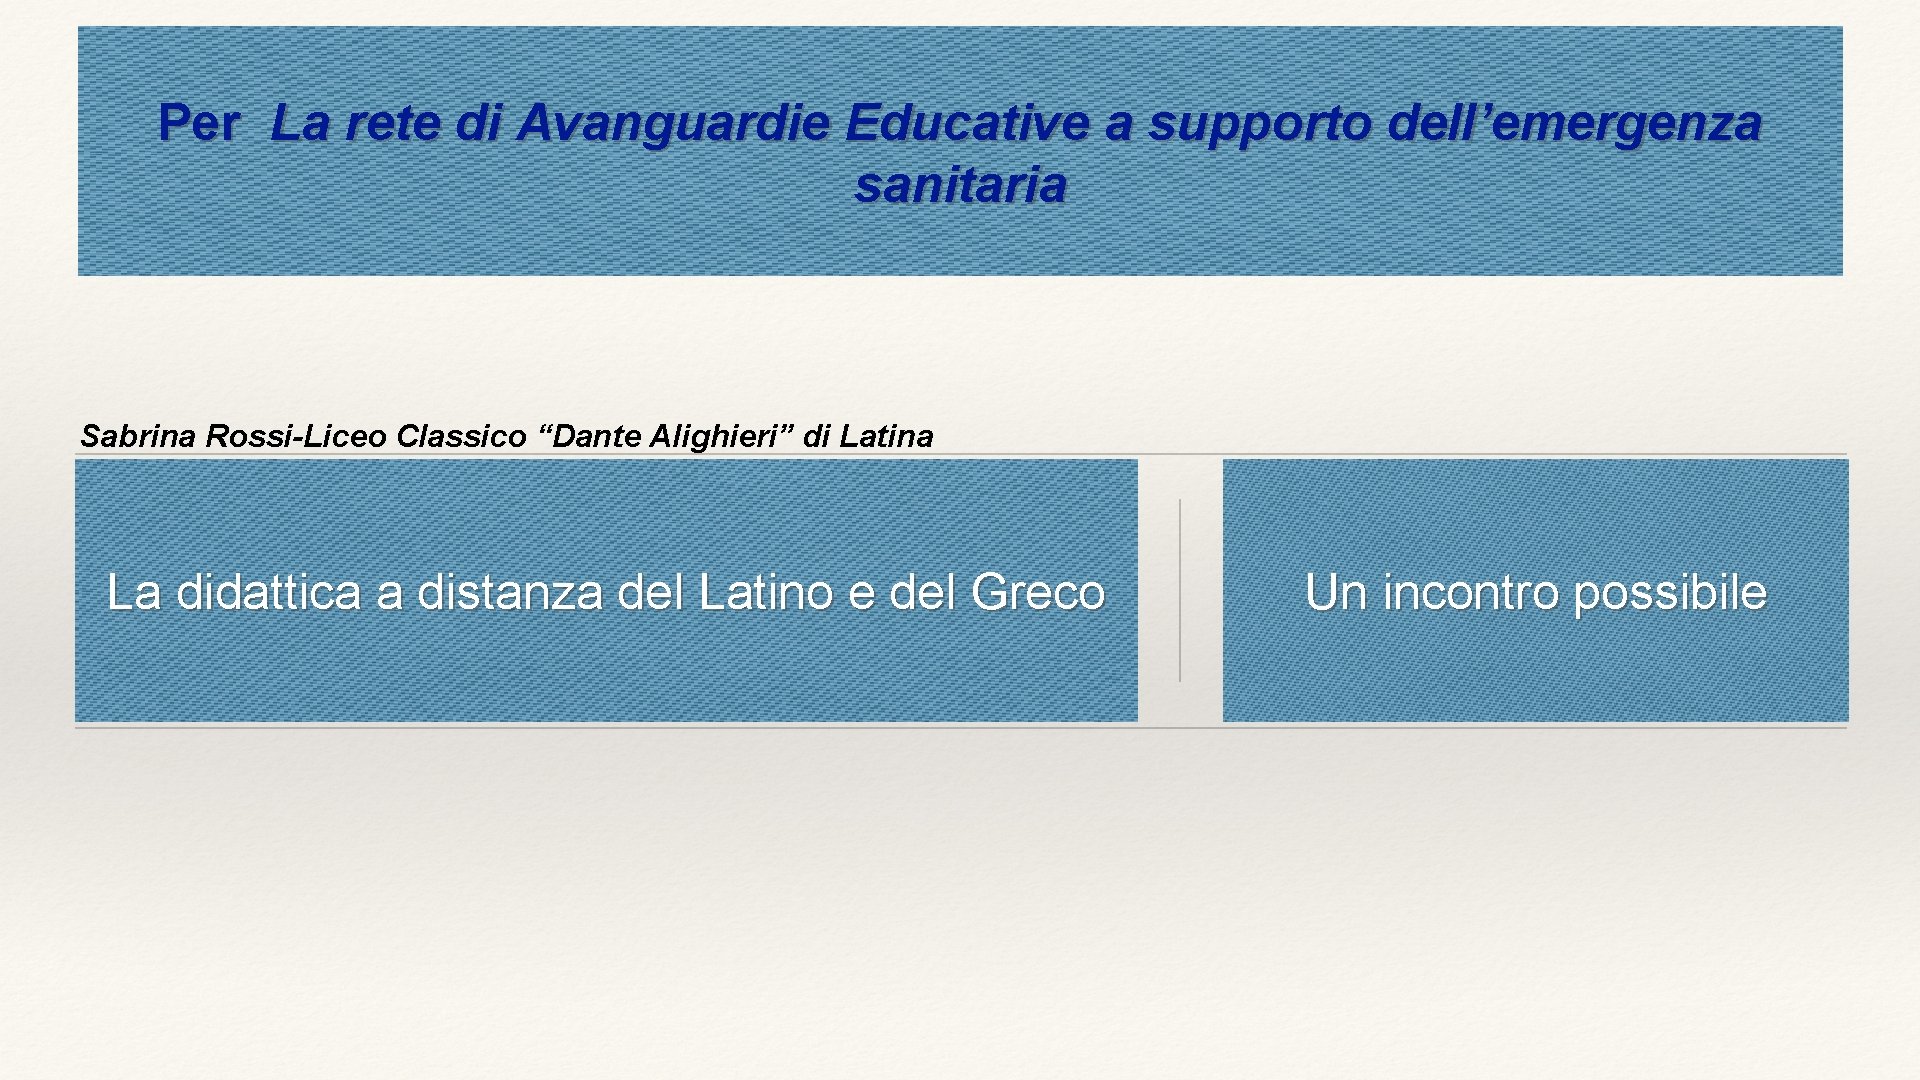 Per La rete di Avanguardie Educative a supporto dell’emergenza sanitaria Sabrina Rossi-Liceo Classico “Dante